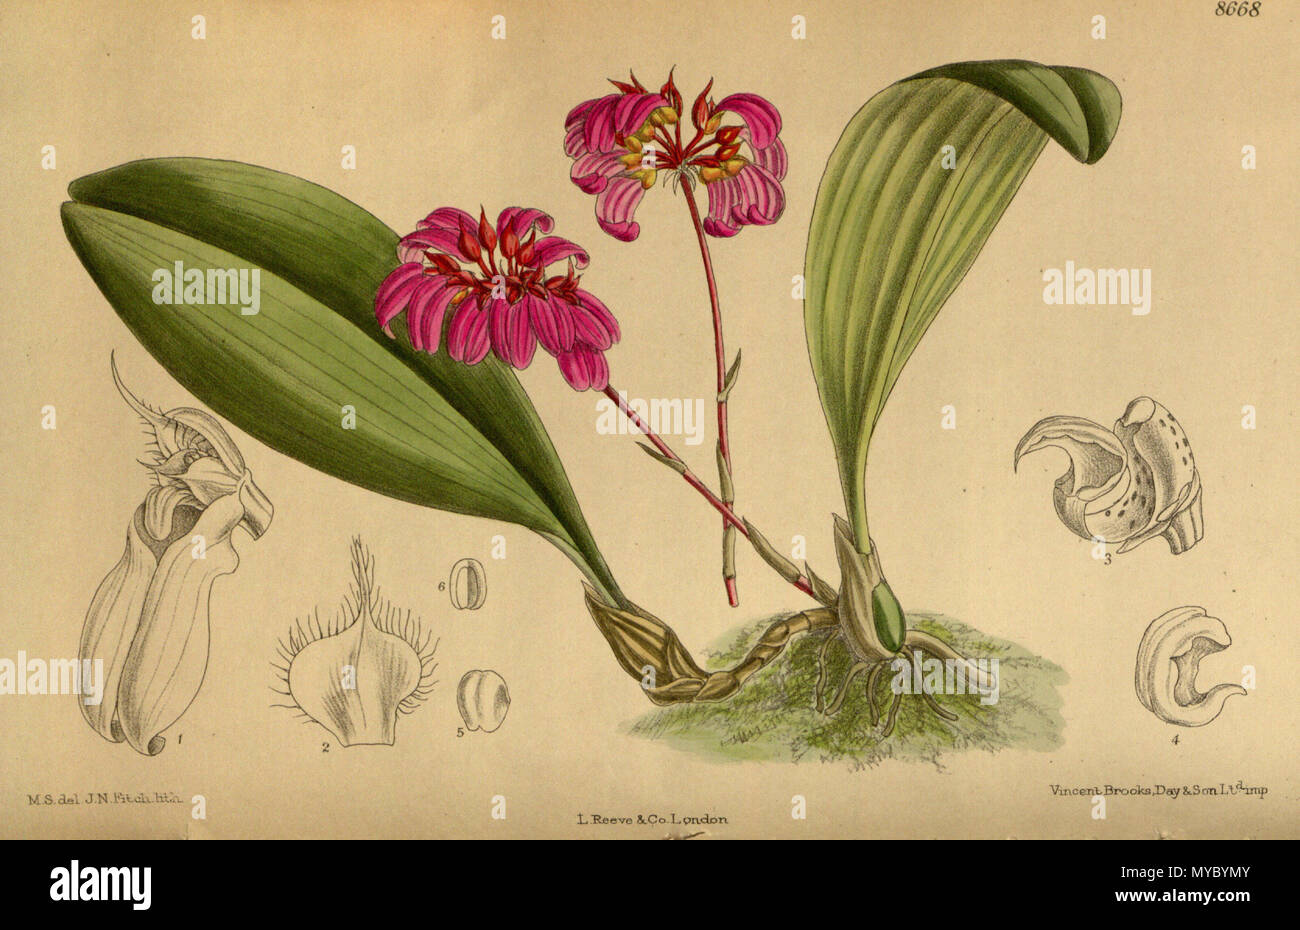 . Cirrhopetalum concinnum var. purpurea (= Bulbophyllum corolliferum), Orchidaceae . 1916. M.S. del., J.N.Fitch lith. 113 Cirrhopetalum concinnum purpurea 142-8668 Stock Photo